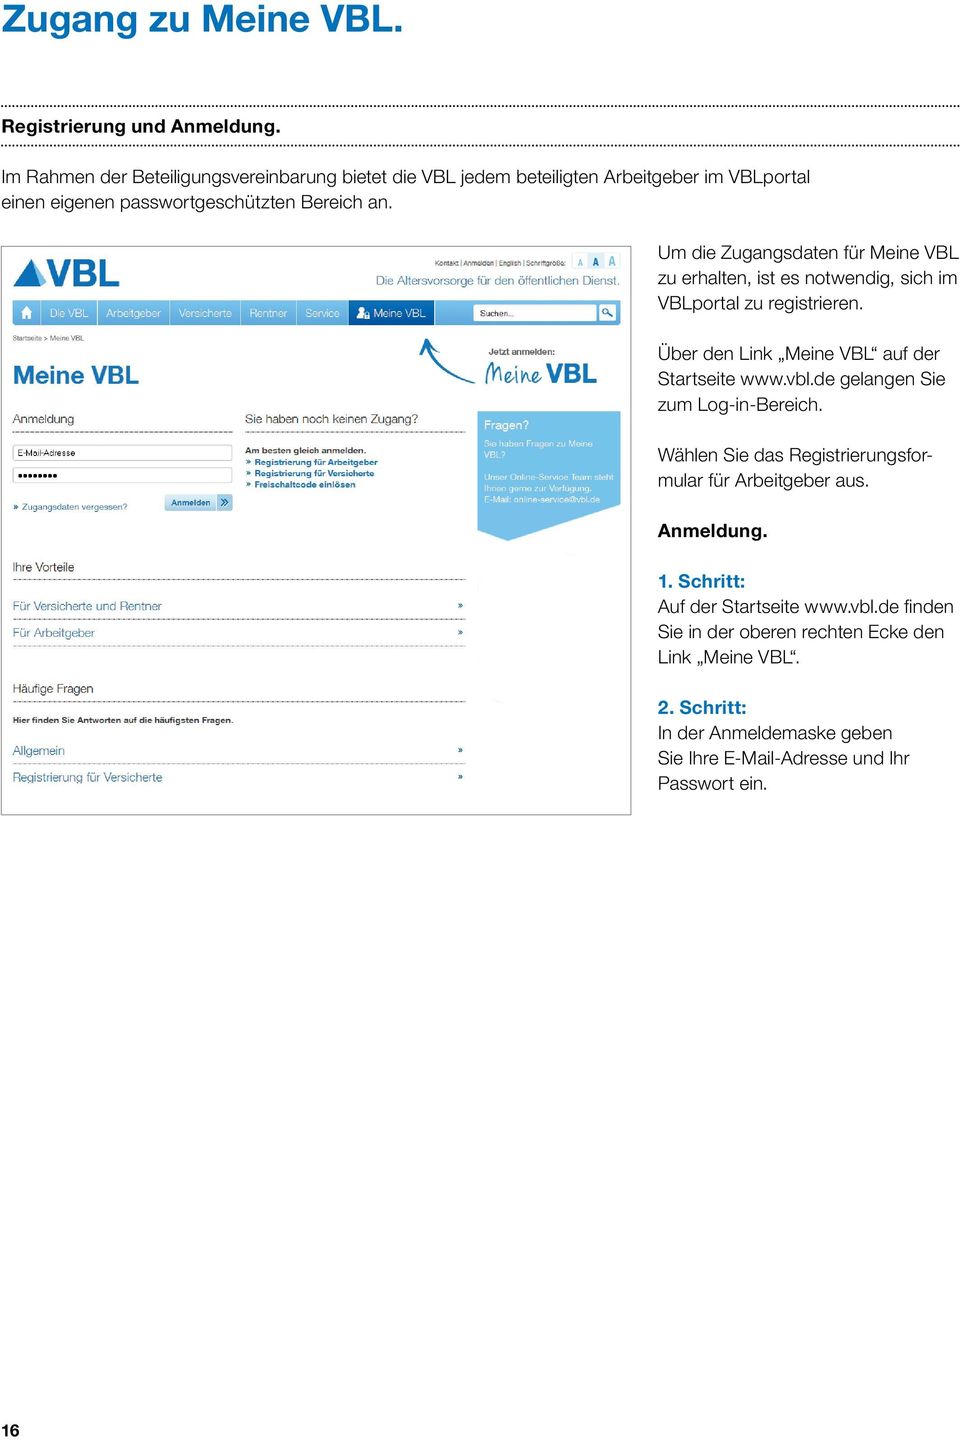 Um die Zugangsdaten für Meine VBL zu erhalten, ist es notwendig, sich im VBLportal zu registrieren. Über den Link Meine VBL auf der Startseite www.vbl.